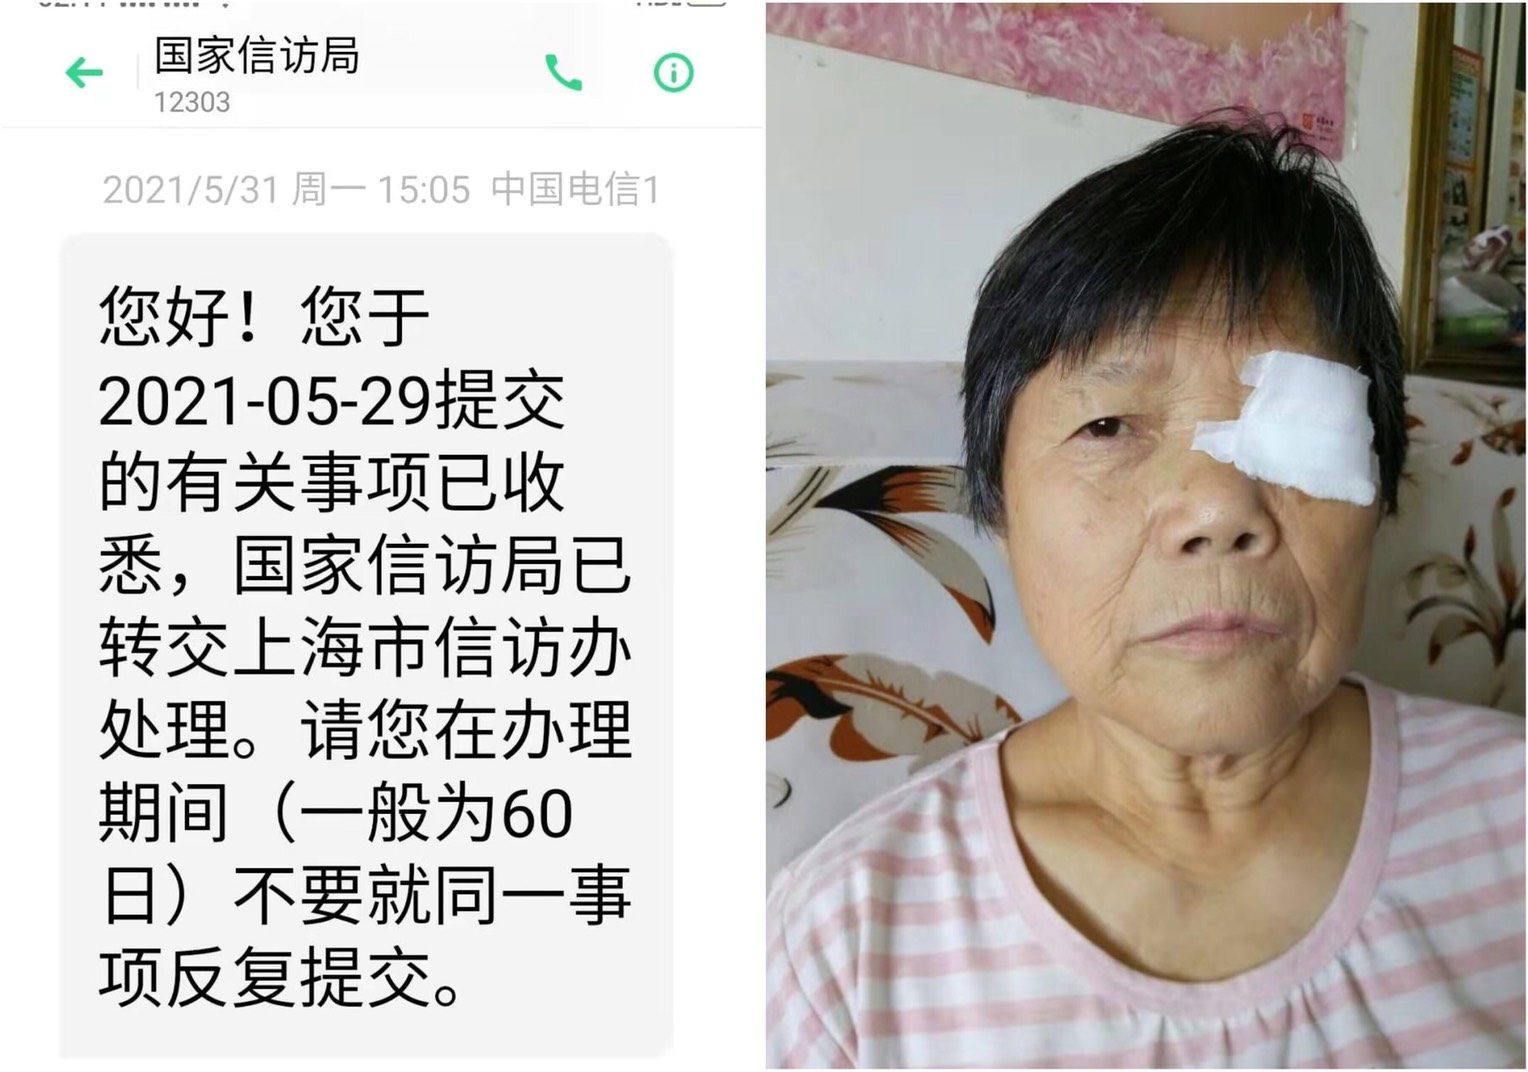 上海訪民王蘭英被入室綁架，訪民們聯署呼籲當局立即放王蘭英回家。（受訪者提供／大紀元合成）